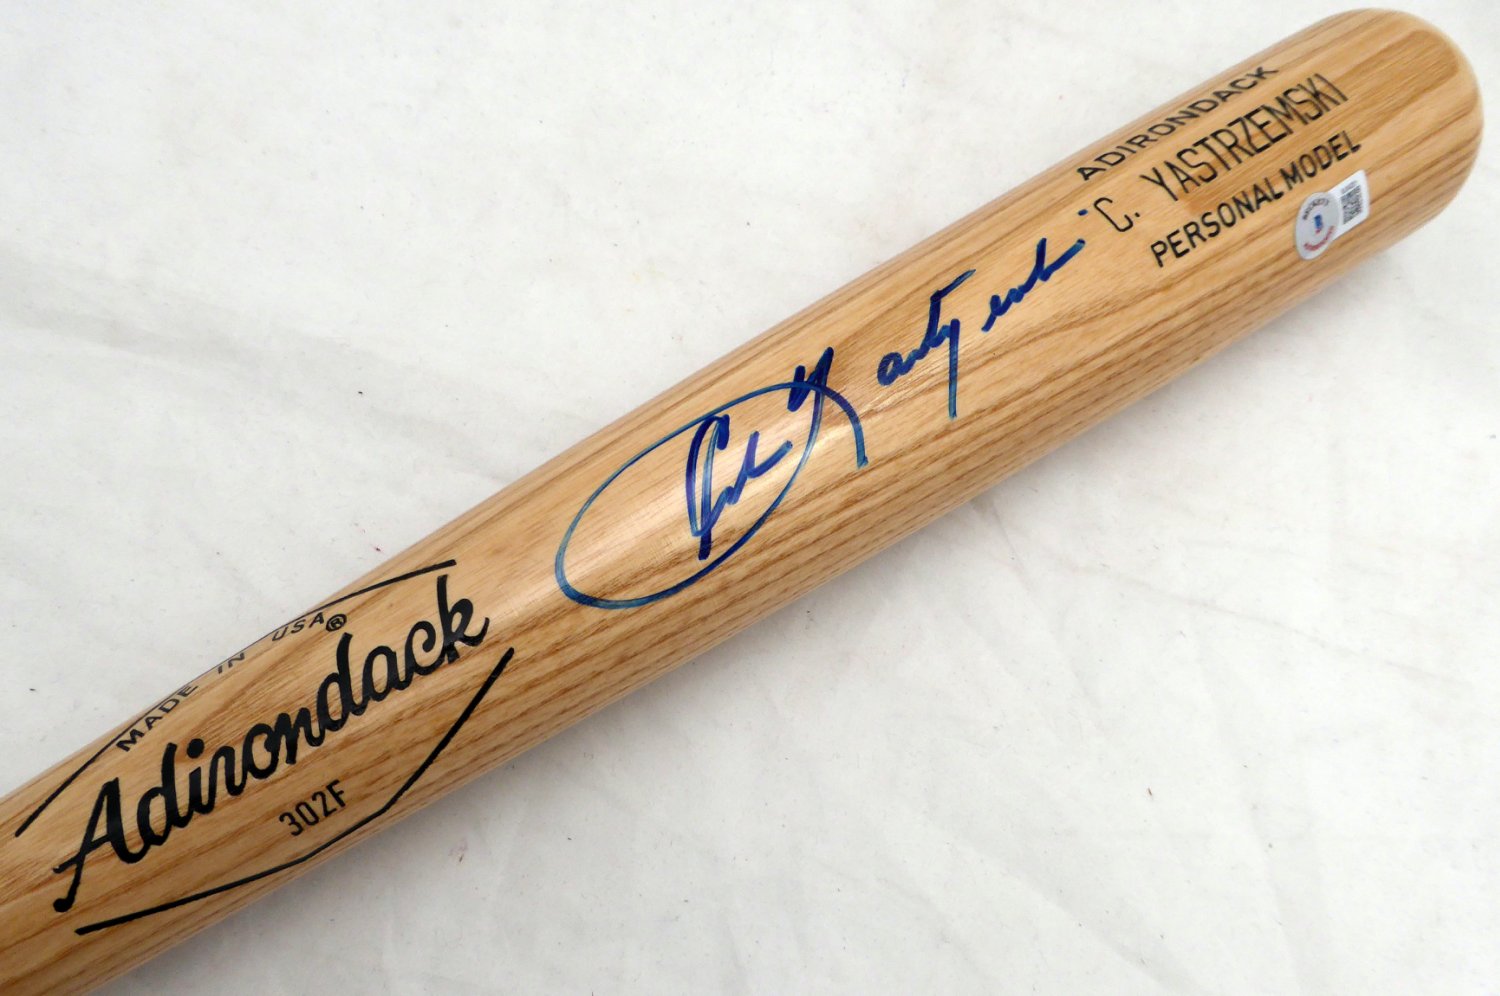 Carl Yastrzemski Autographed and Framed Boston Red Sox Jersey